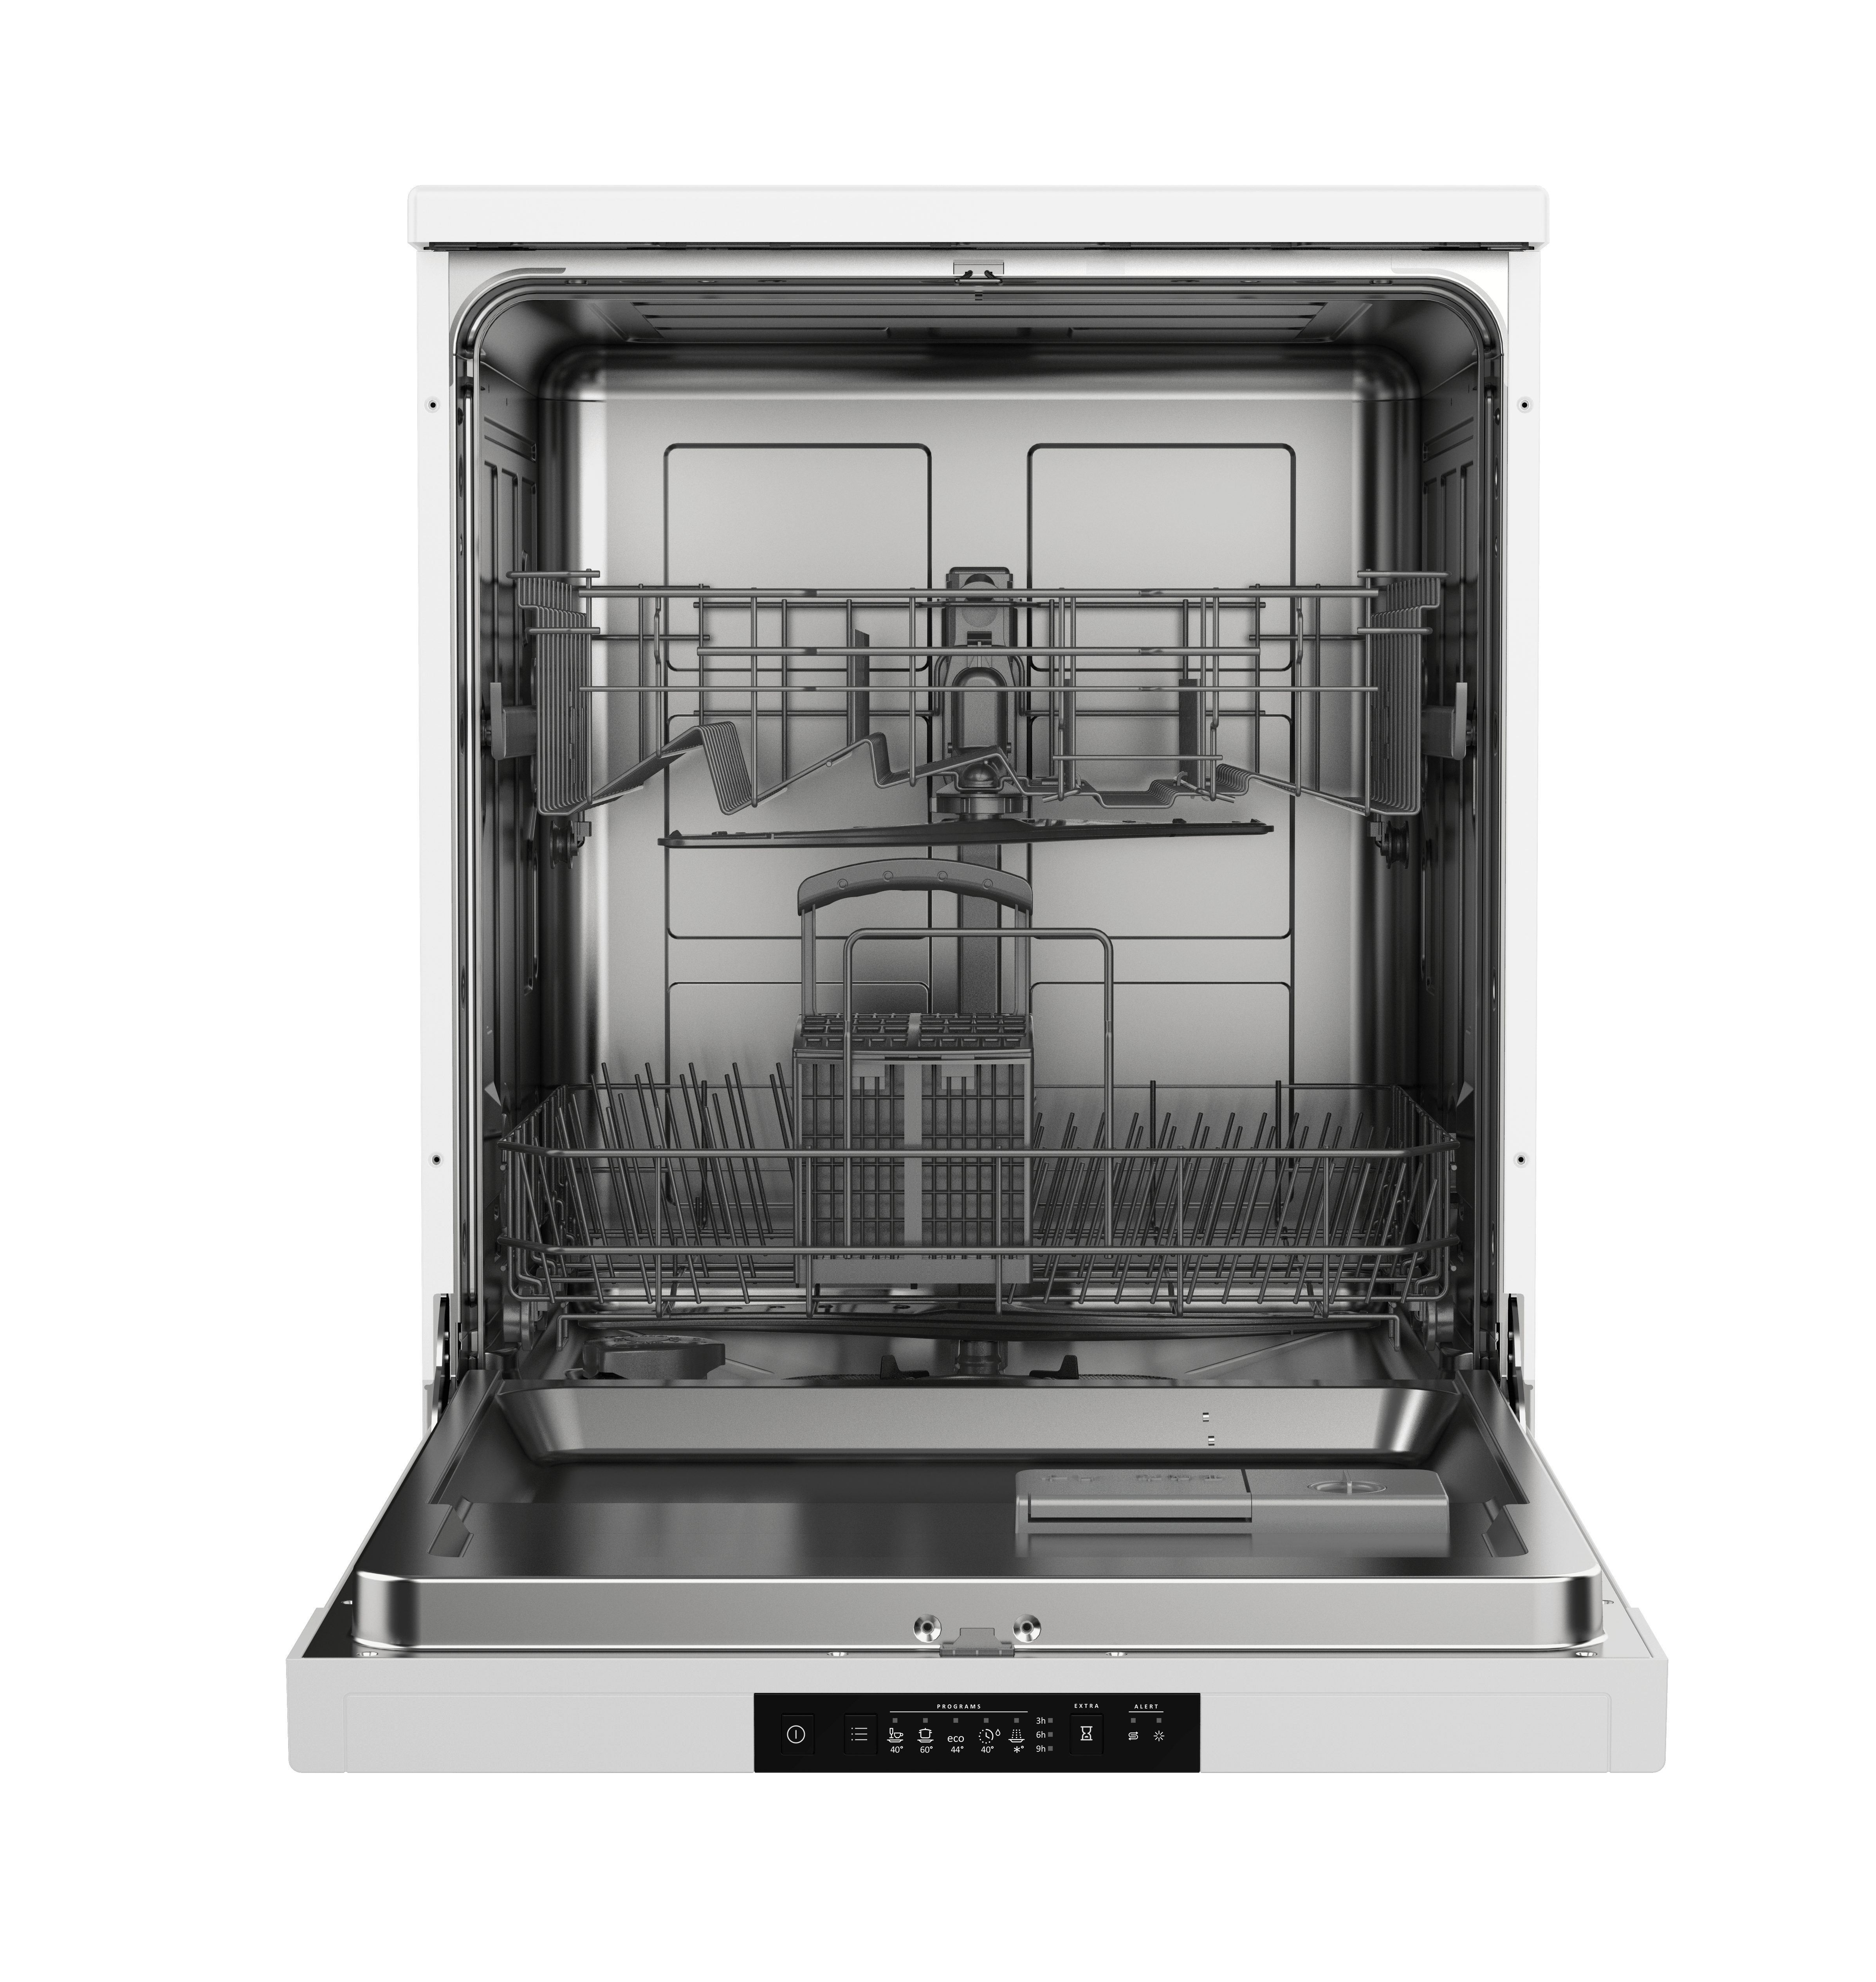 Встроенная посудомоечная машина 60 см горенье. Встраиваемая посудомоечная машина Gorenje gv62040. Встраиваемая посудомоечная машина Gorenje gv61212. Посудомоечная машина Gorenje gs62040w. Посудомоечная машина Gorenje gs520e15s.